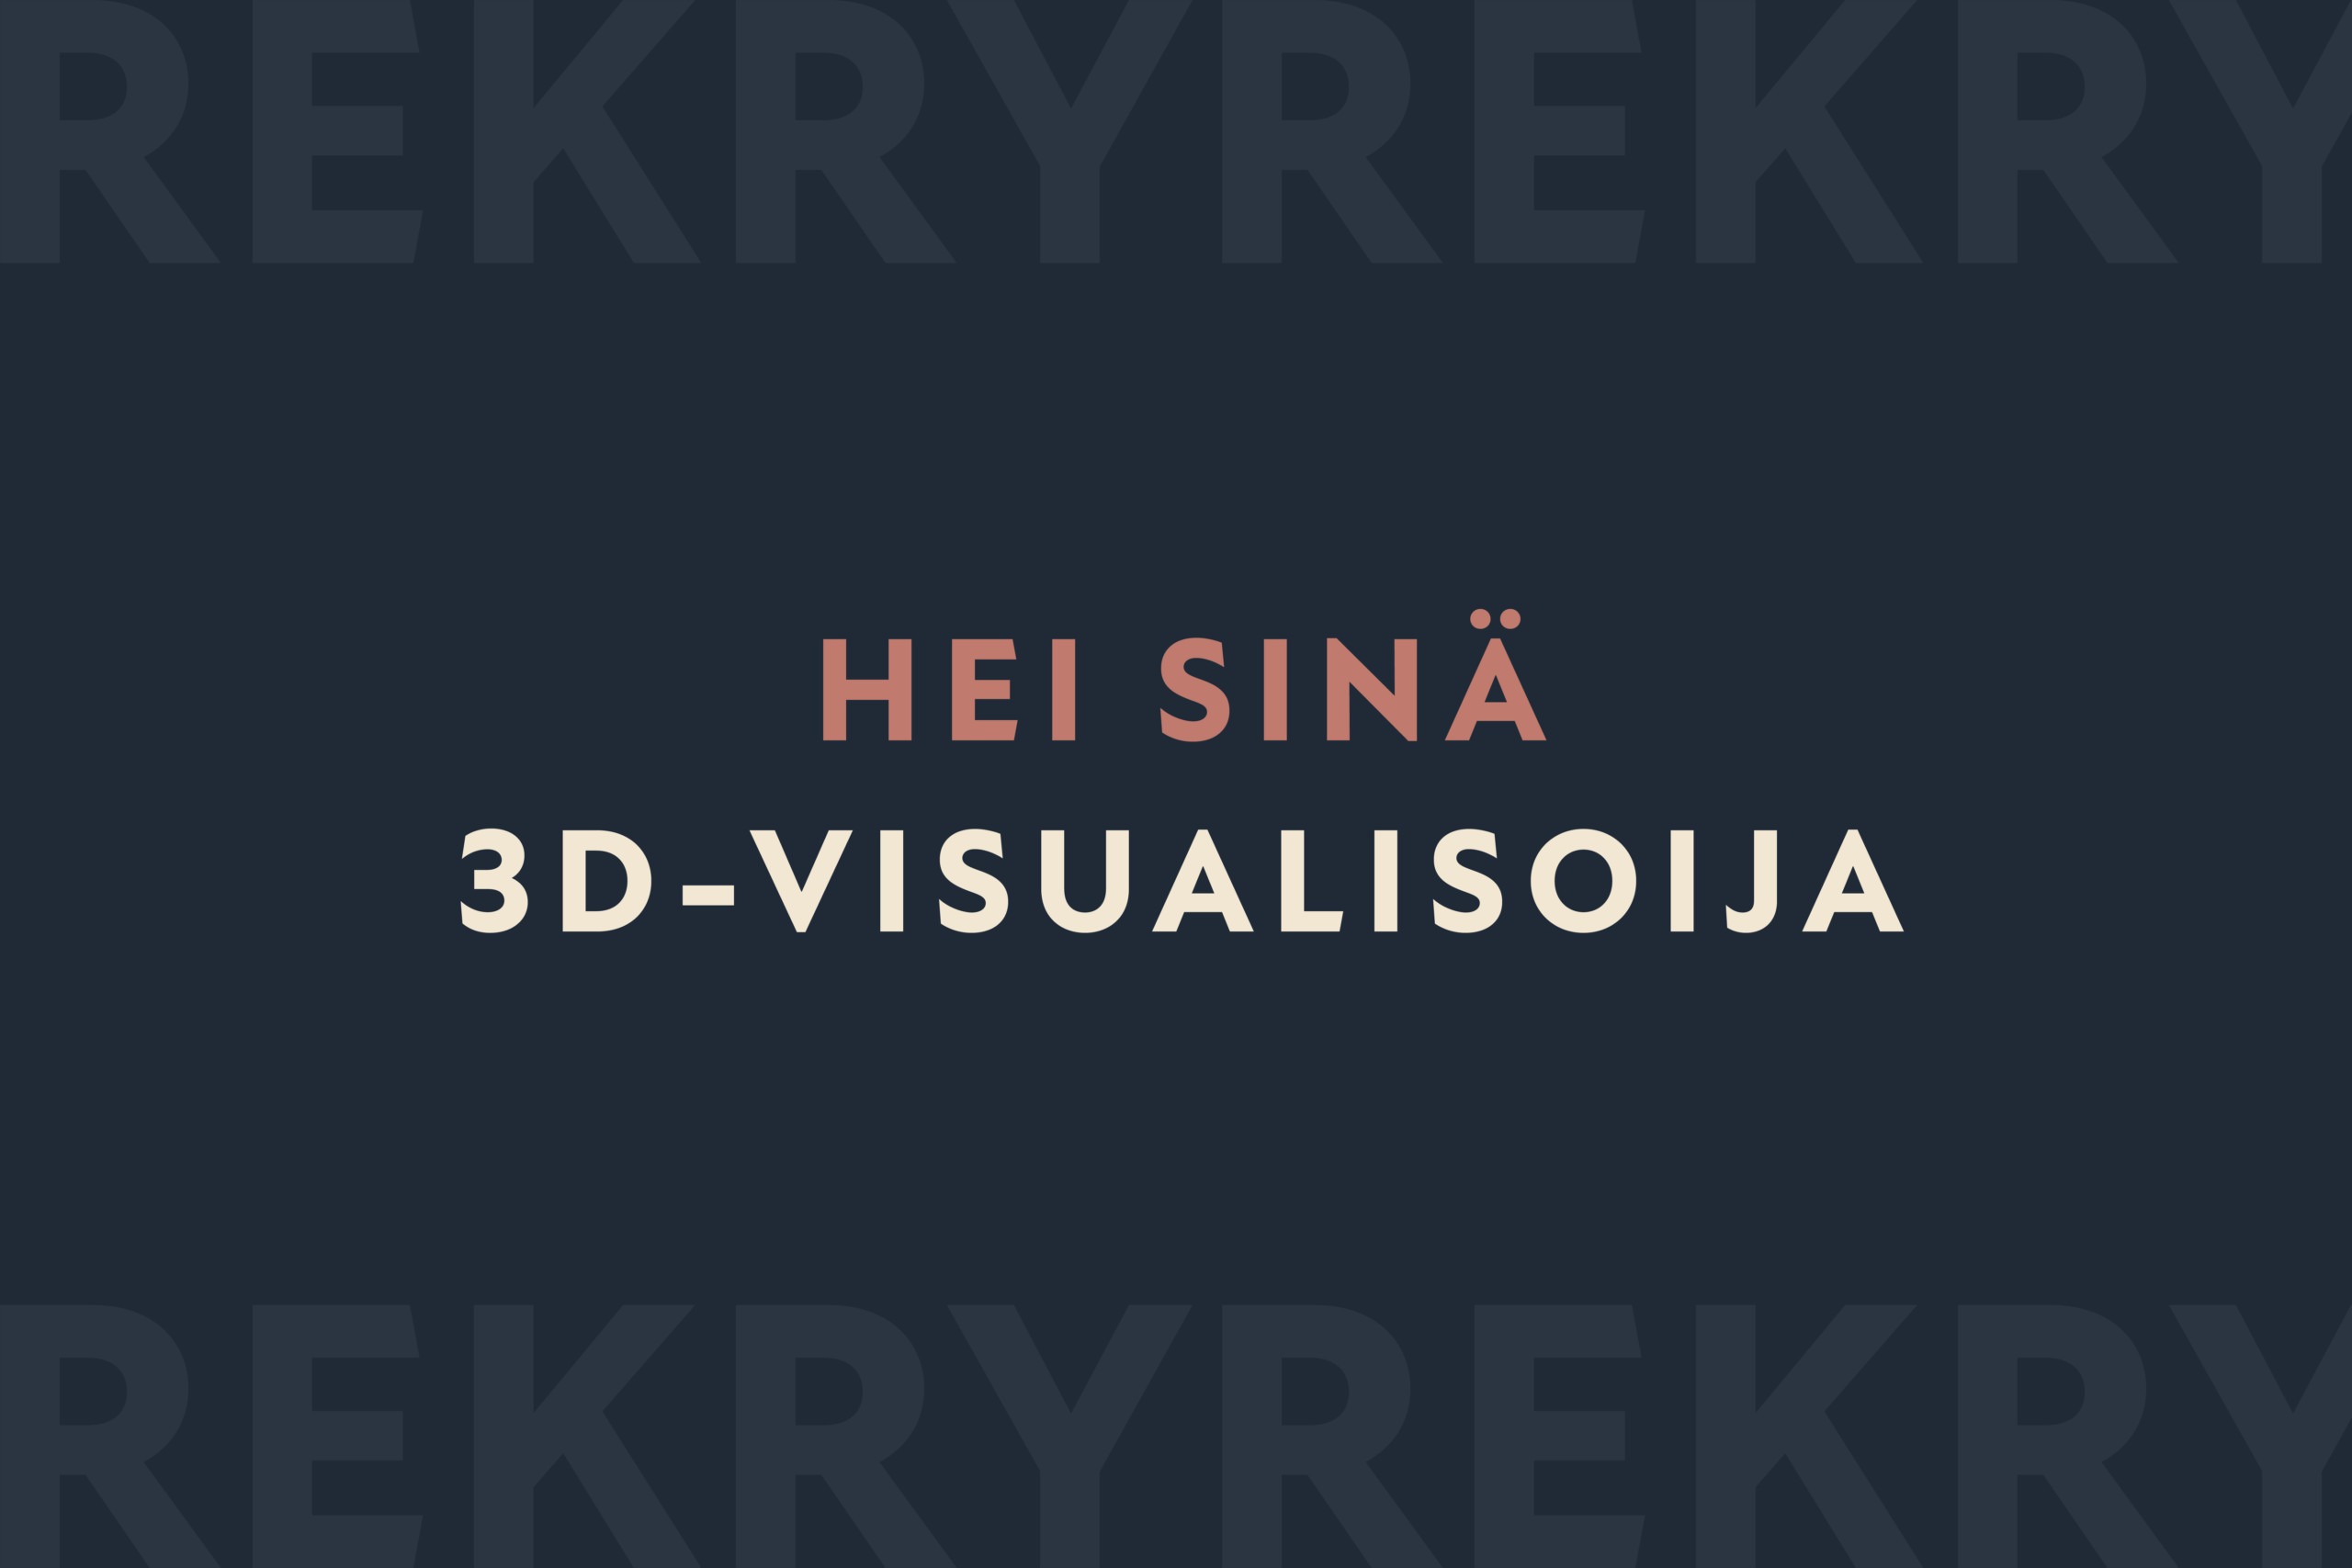 Rune & Berg Design etsii taitavaa 3D-visualisoijaa.